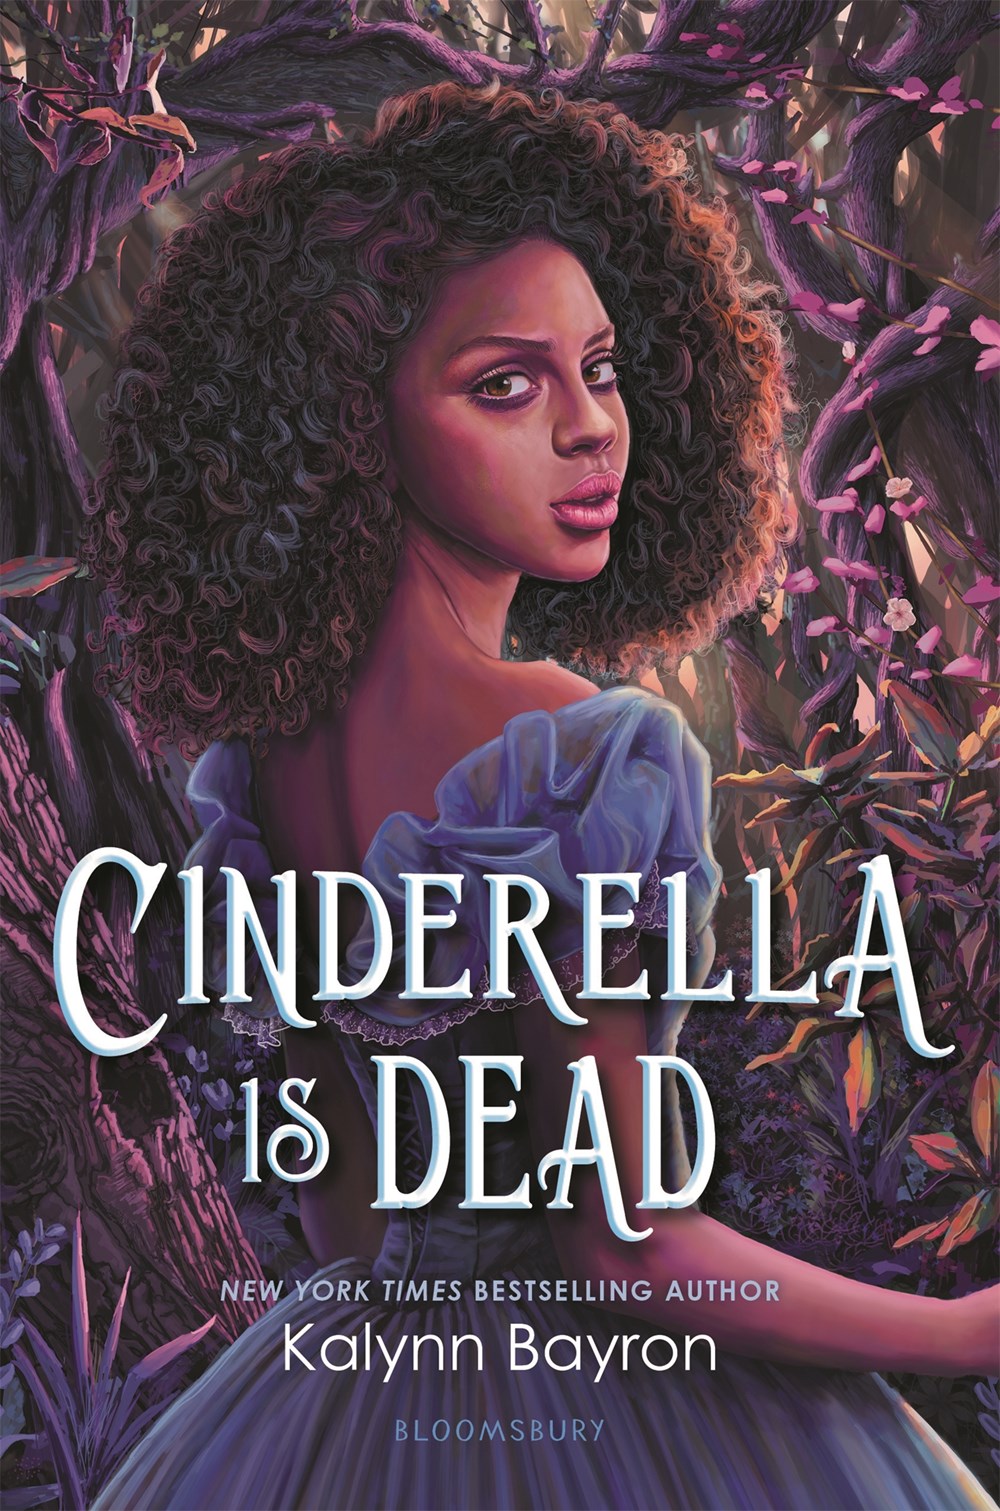 Cinderella is Dead by Kalynn Bayronl